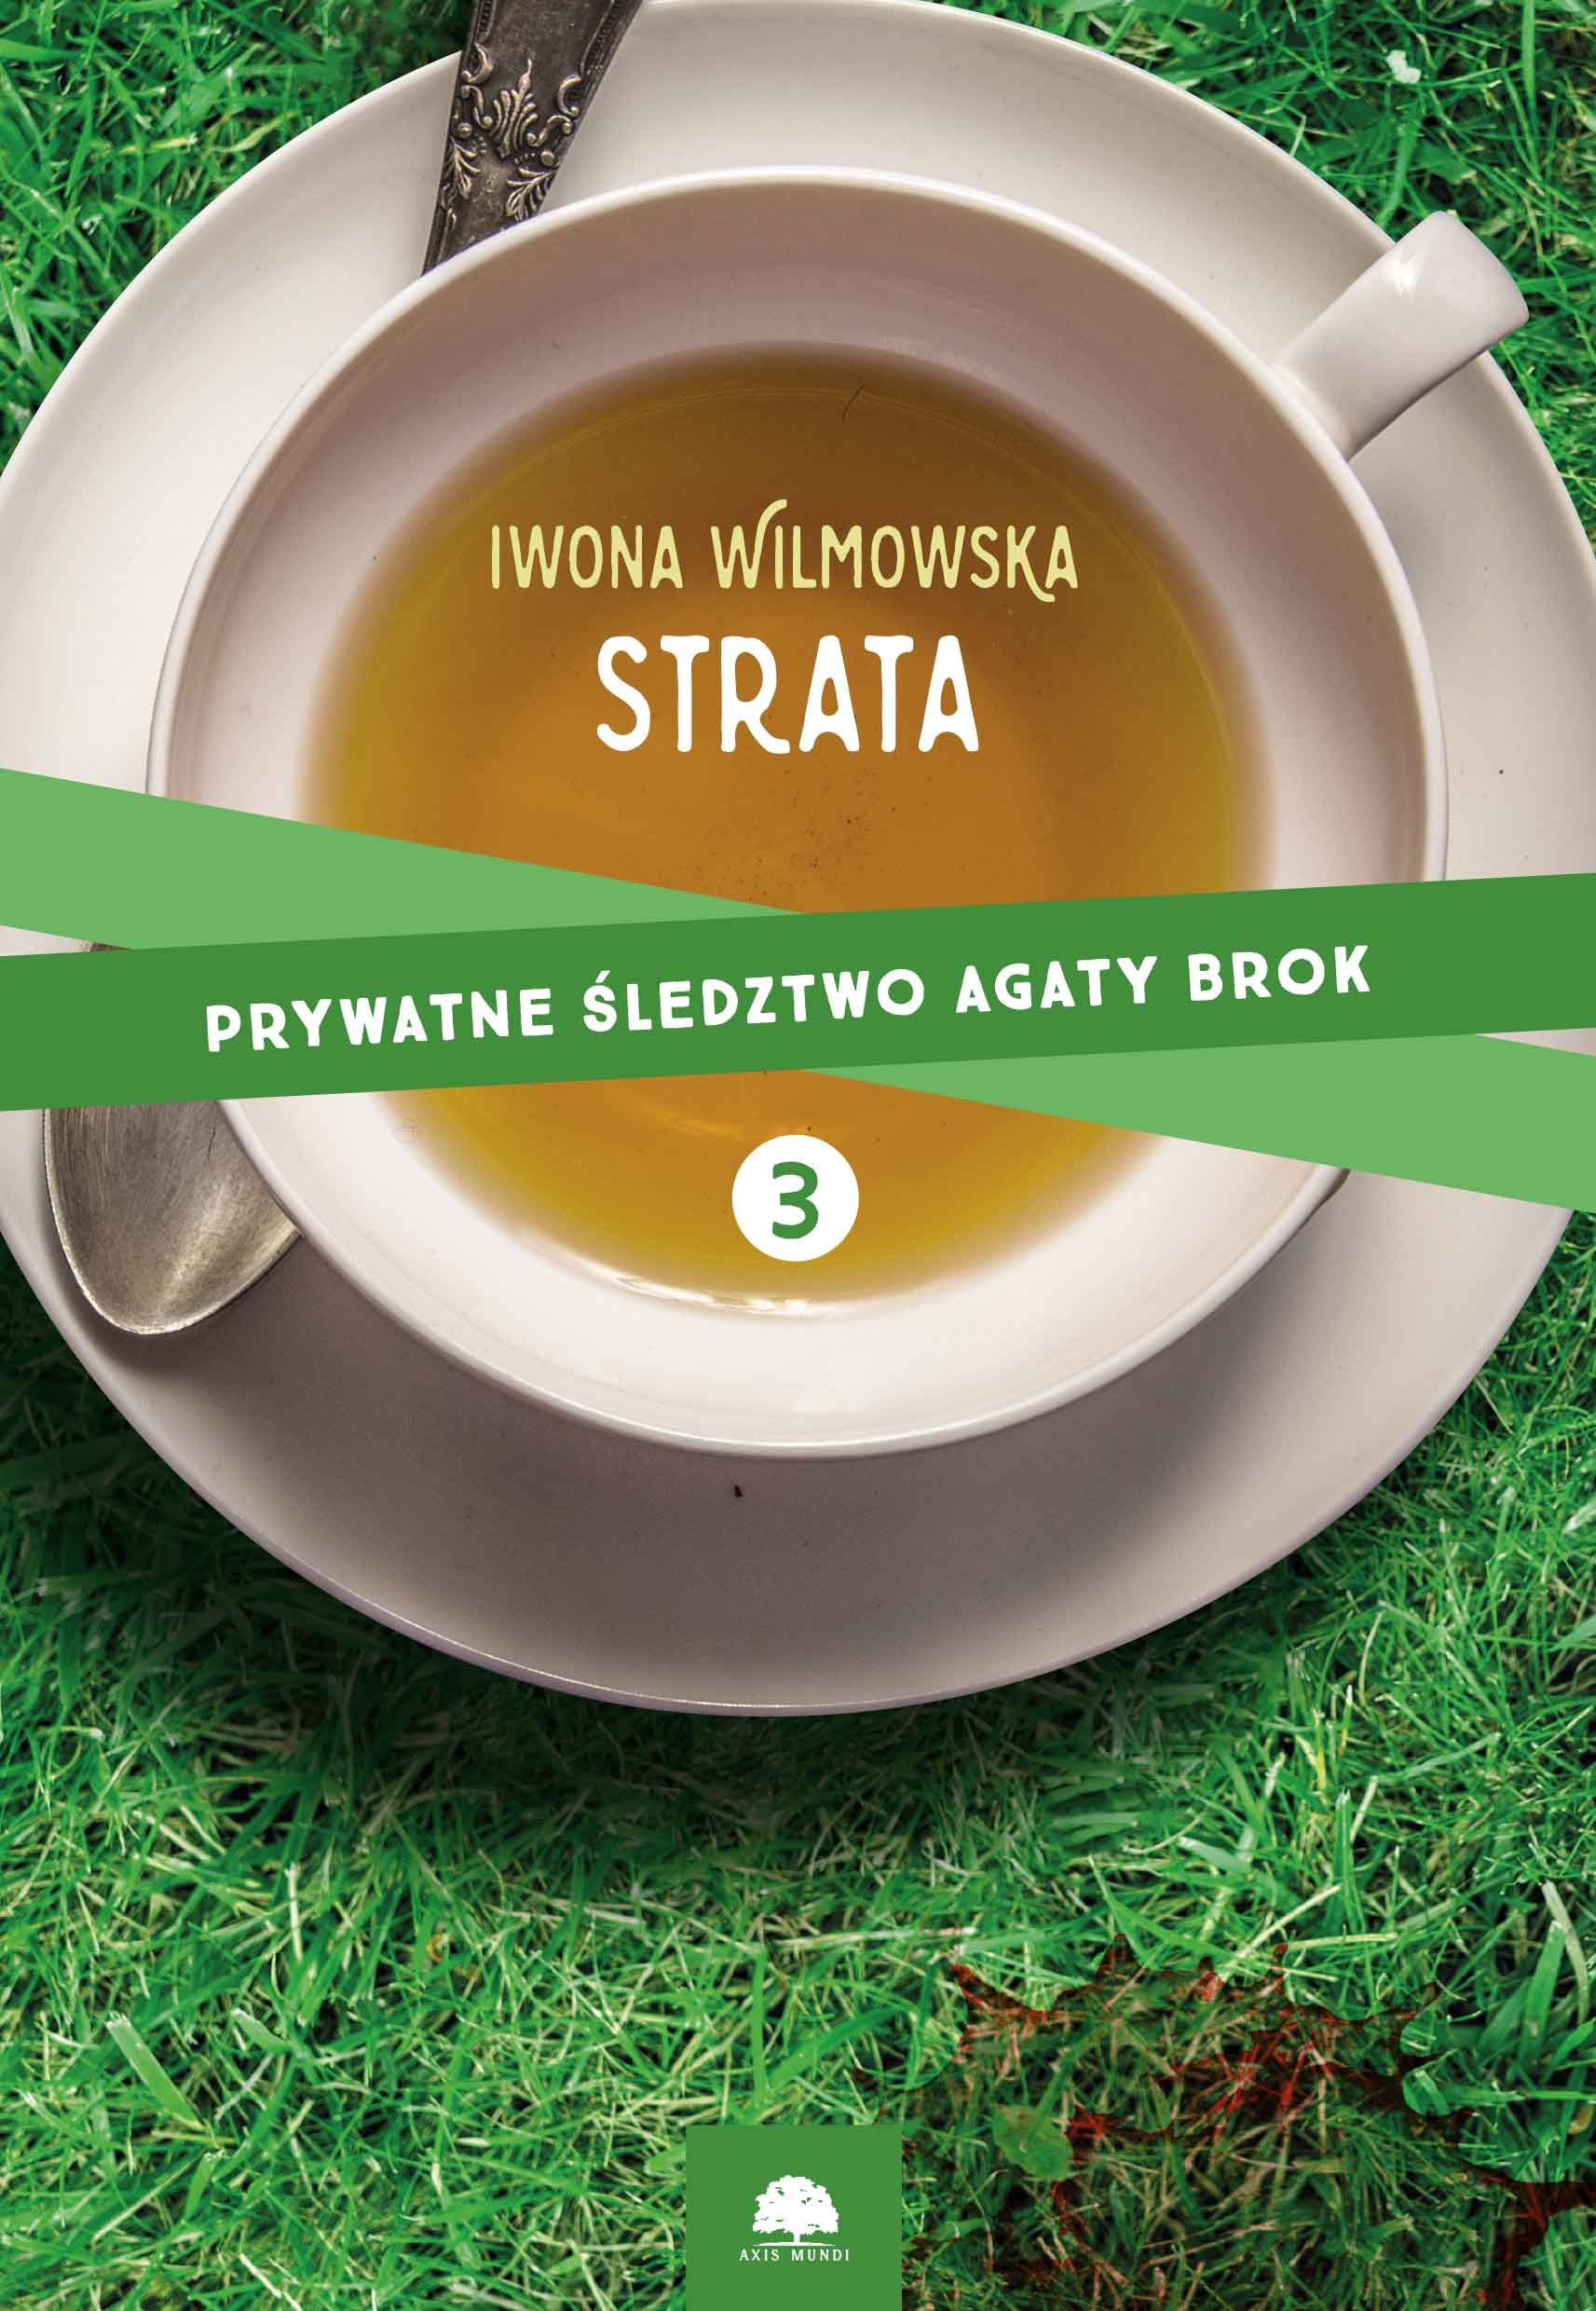 Prywatne śledztwo Agaty Brok, tom.3., "Strata", Agata Wilmowska